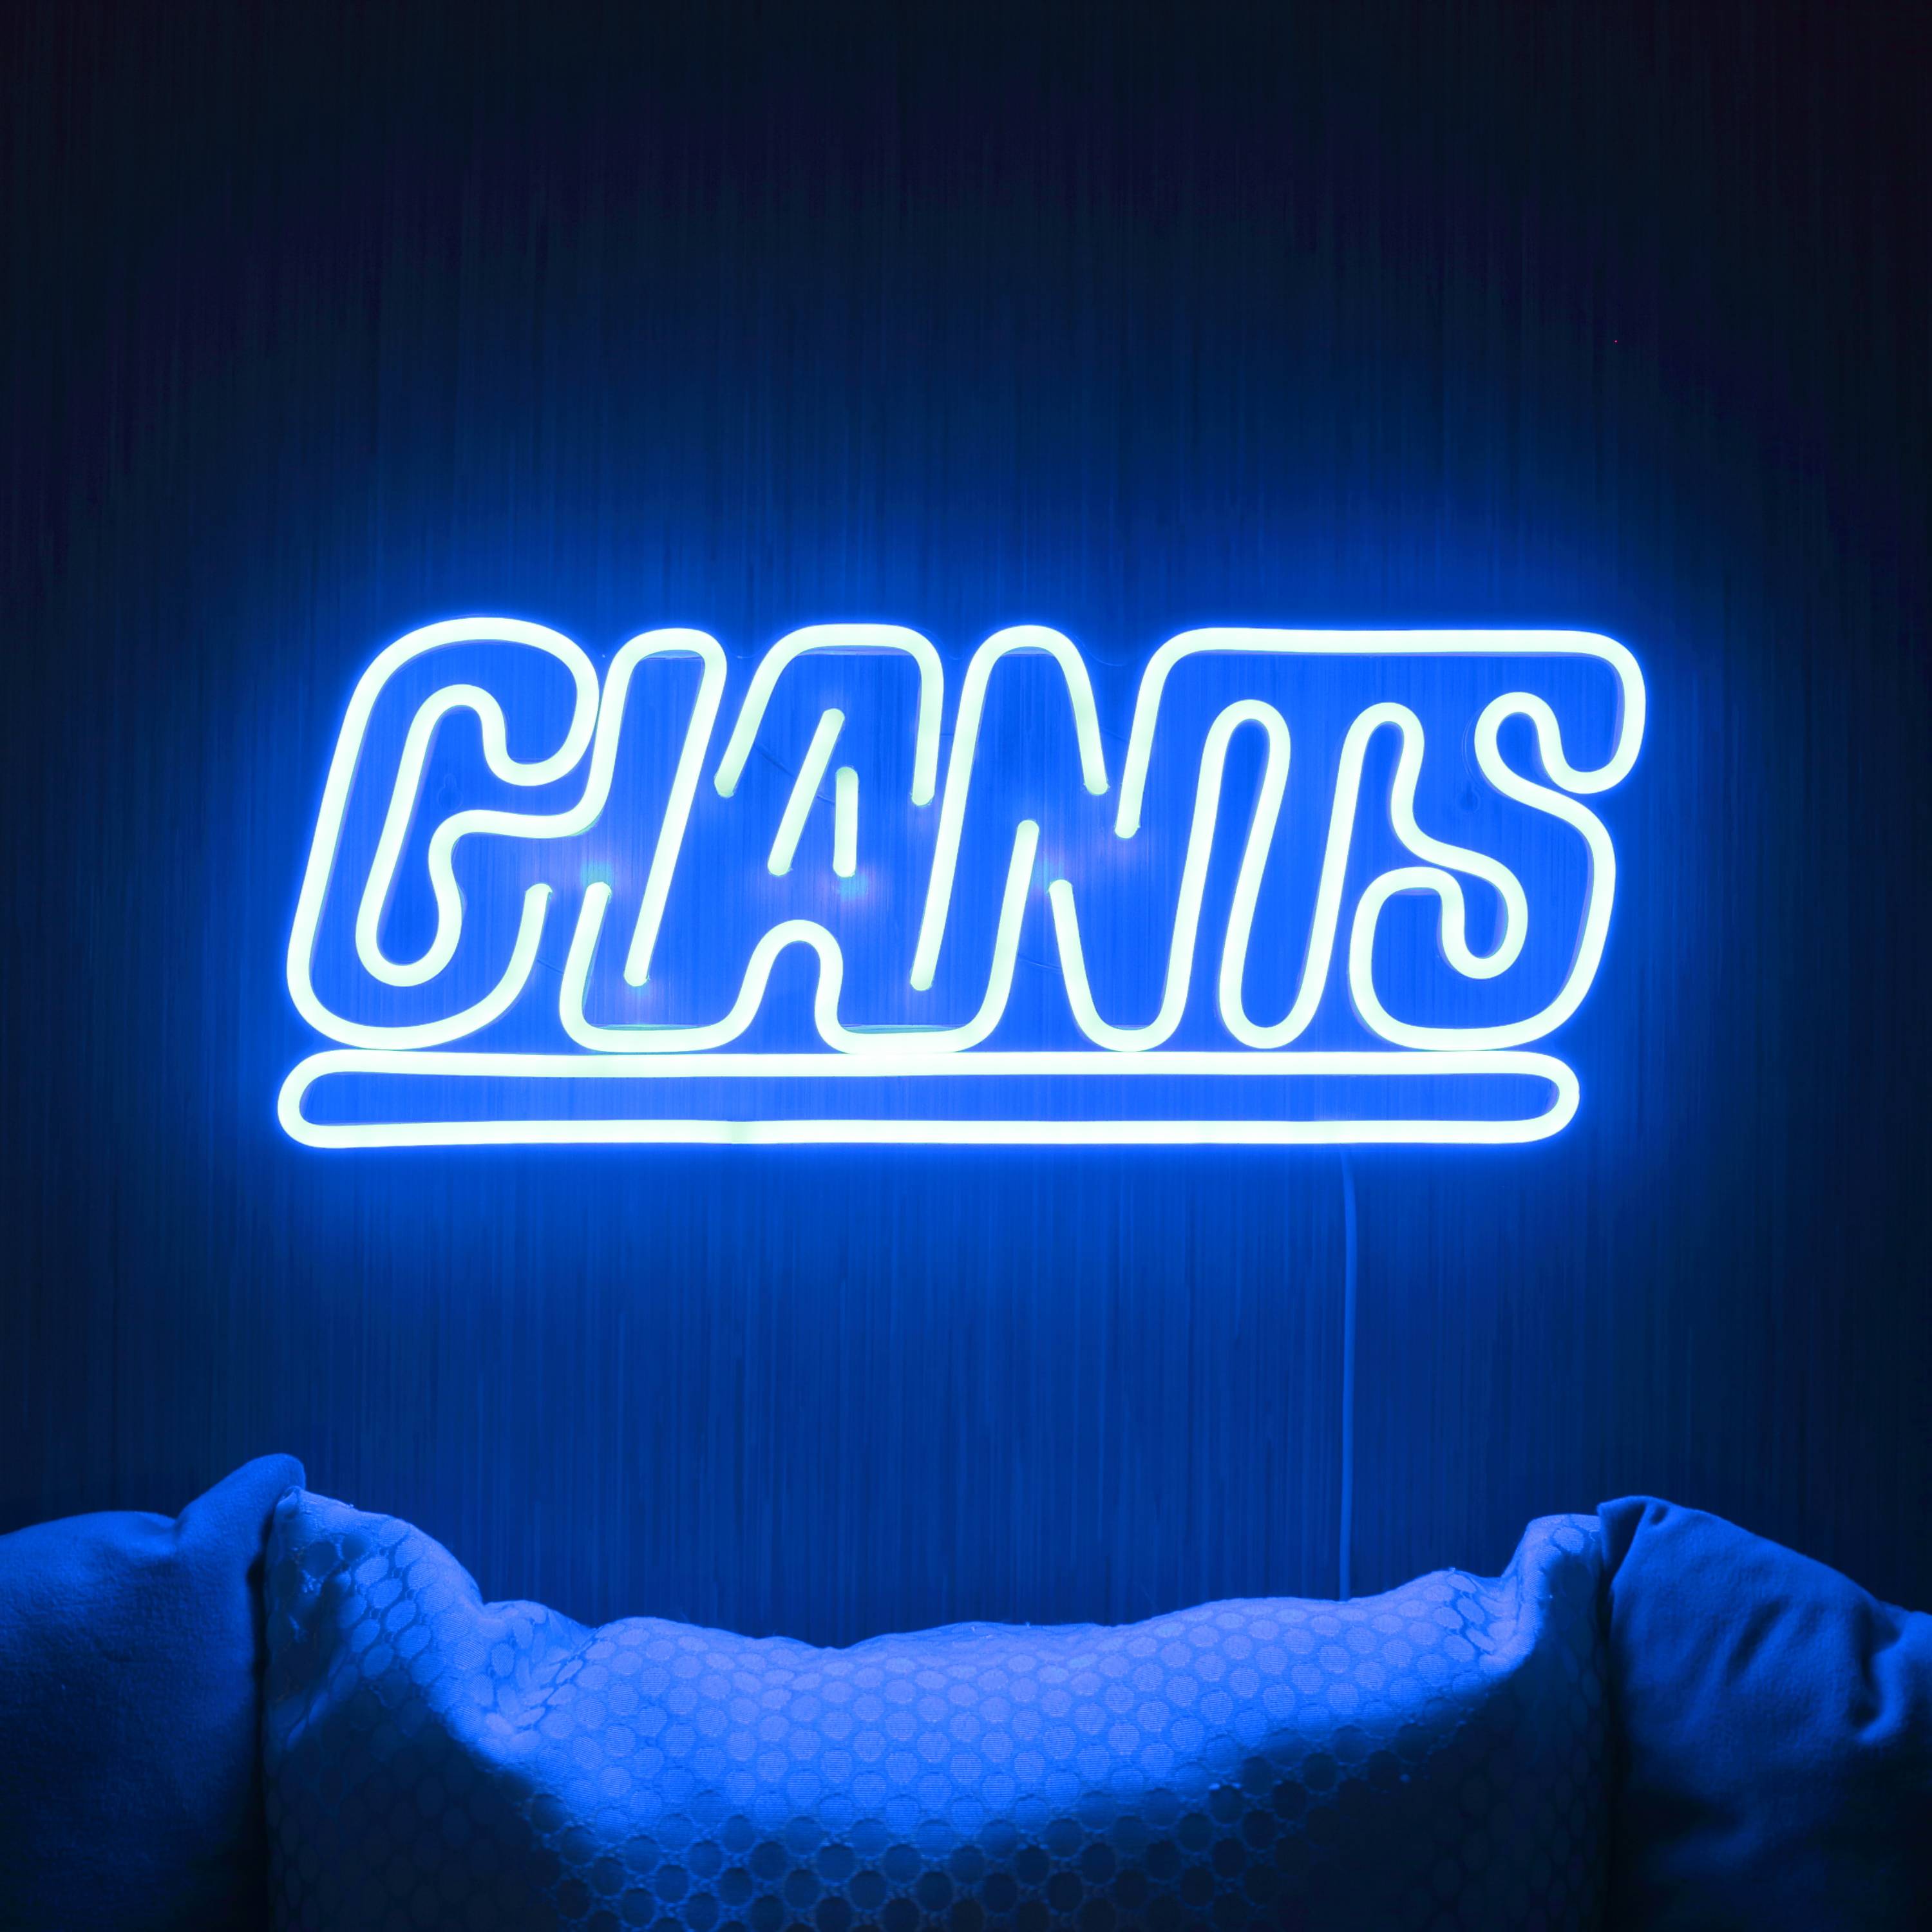 NFL GIANTS Large Flex Neon LED Sign